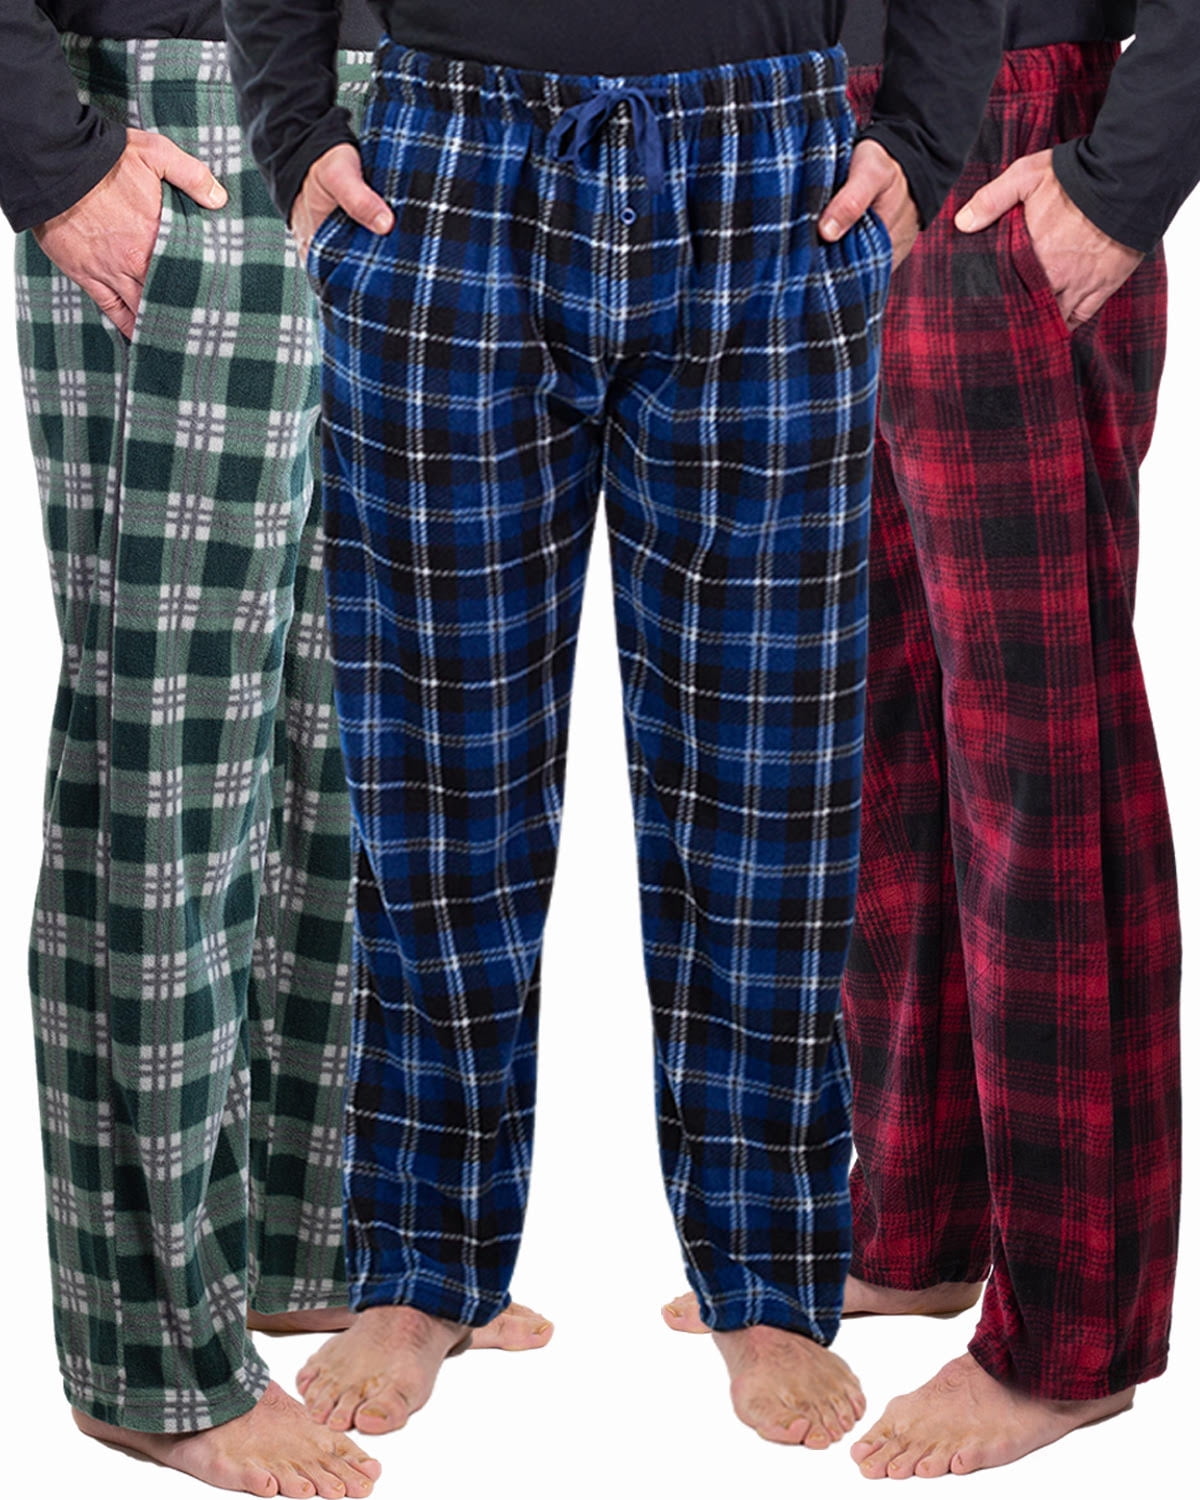 Details about   AjezMax Men's Pajama Bottoms Cotton Plaid Lounge Pants Winter Long Sleepwear Pac 